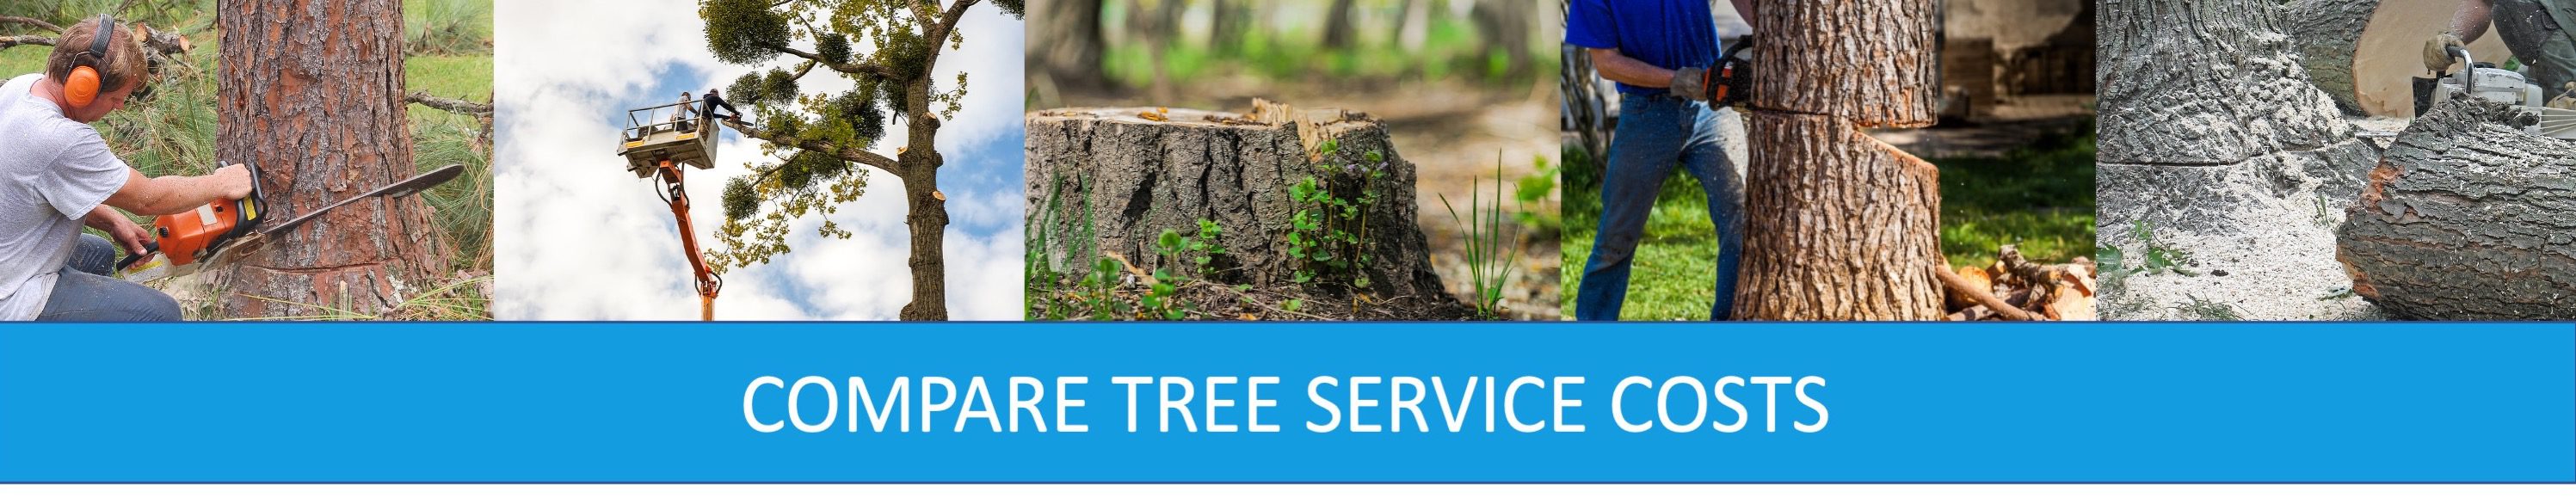 COMPARE TREE SERVICE COSTS